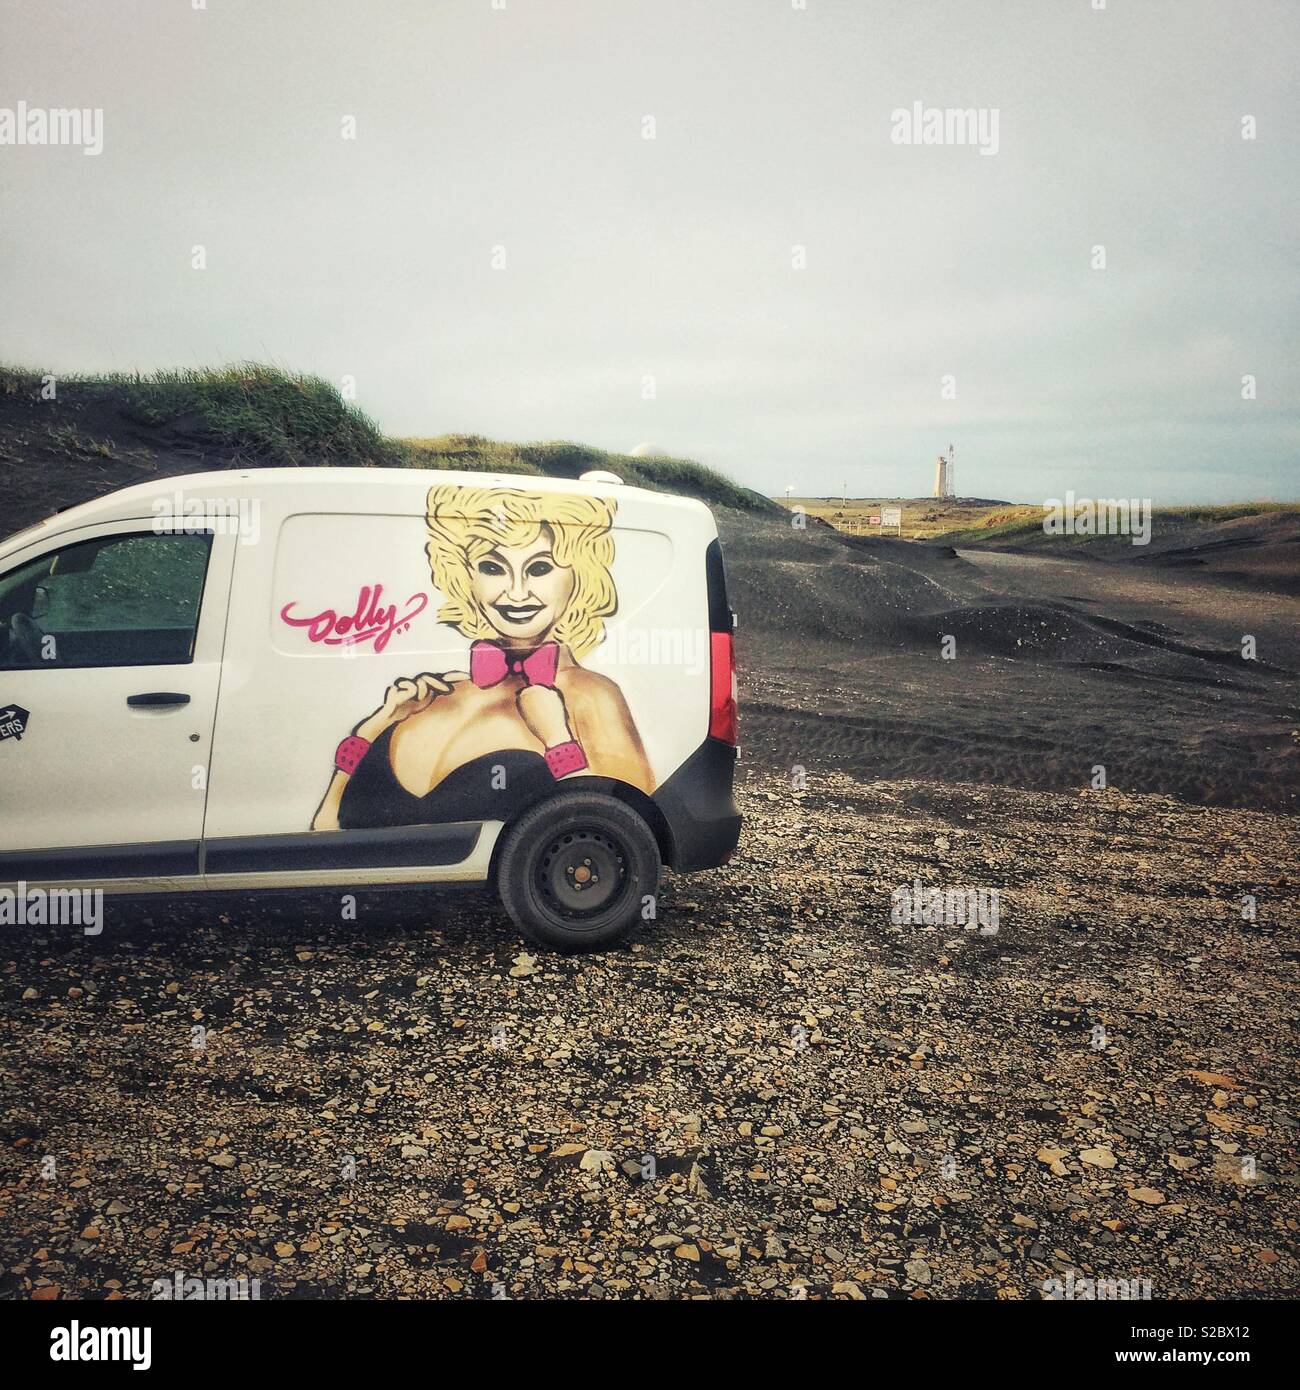 Ein Wohnmobil mit Mietwagen, der in der Landschaft Islands mit einer Dolly Parton Grafik geparkt ist - Island Tourismus Stockfoto